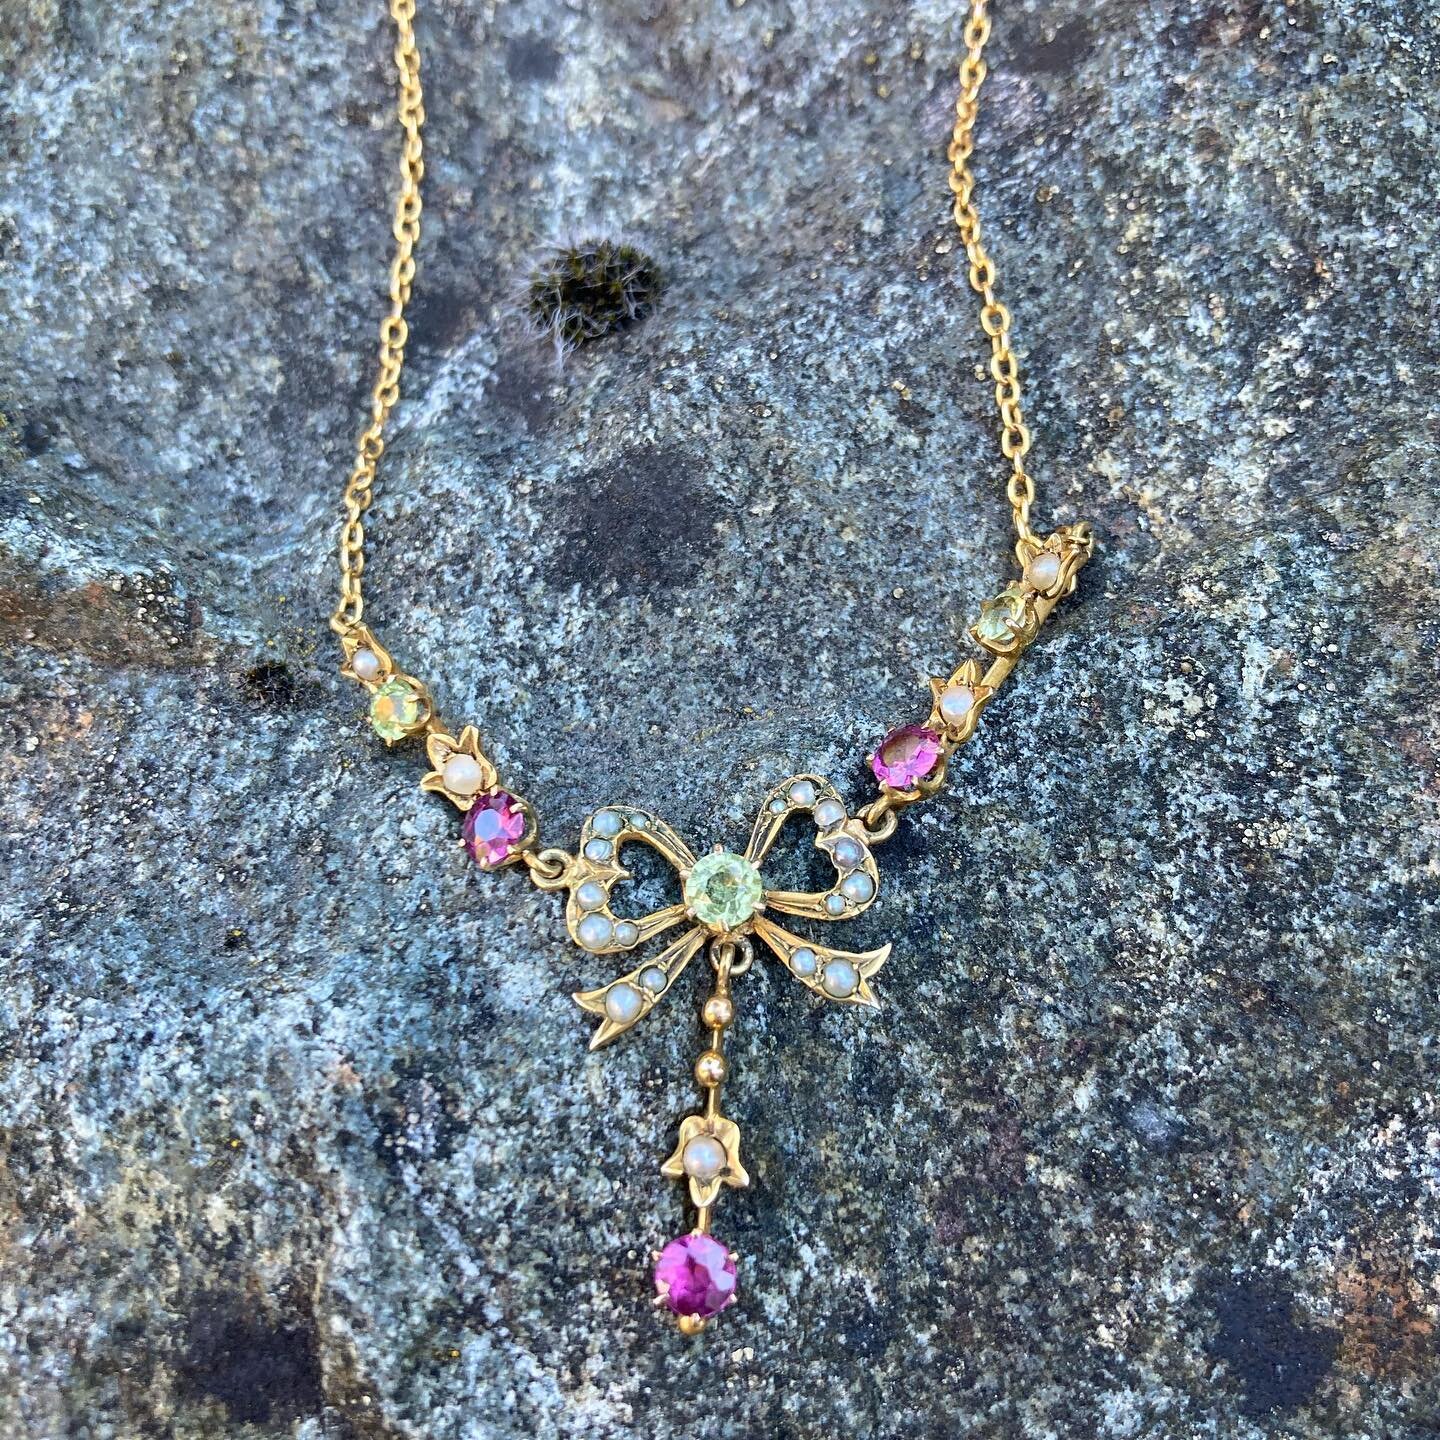 A fab gold Edwardian Lavalier Necklace. Looking beautiful sunbathing on a rock! #edwardianjewelry #edwardianlavalier #antiquejewelry #antiquefindsbygoldfinch